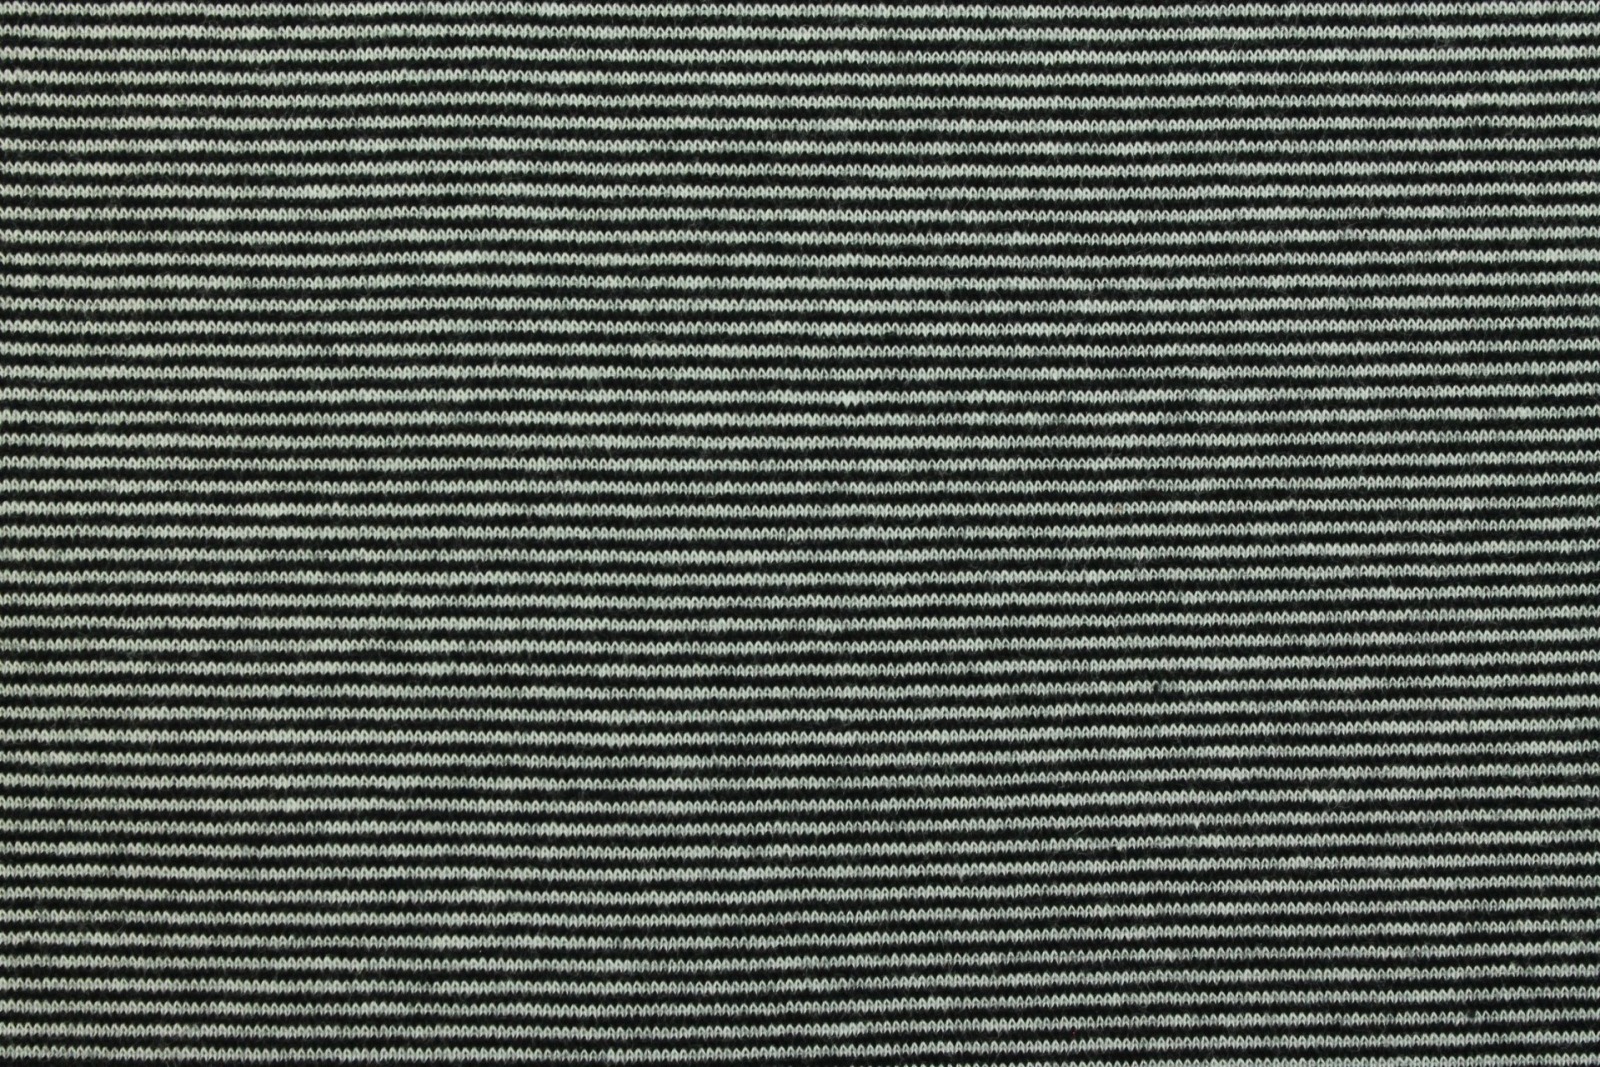 05m Ringelbündchen Bündchen glatt Streifen schwarz weiß 2